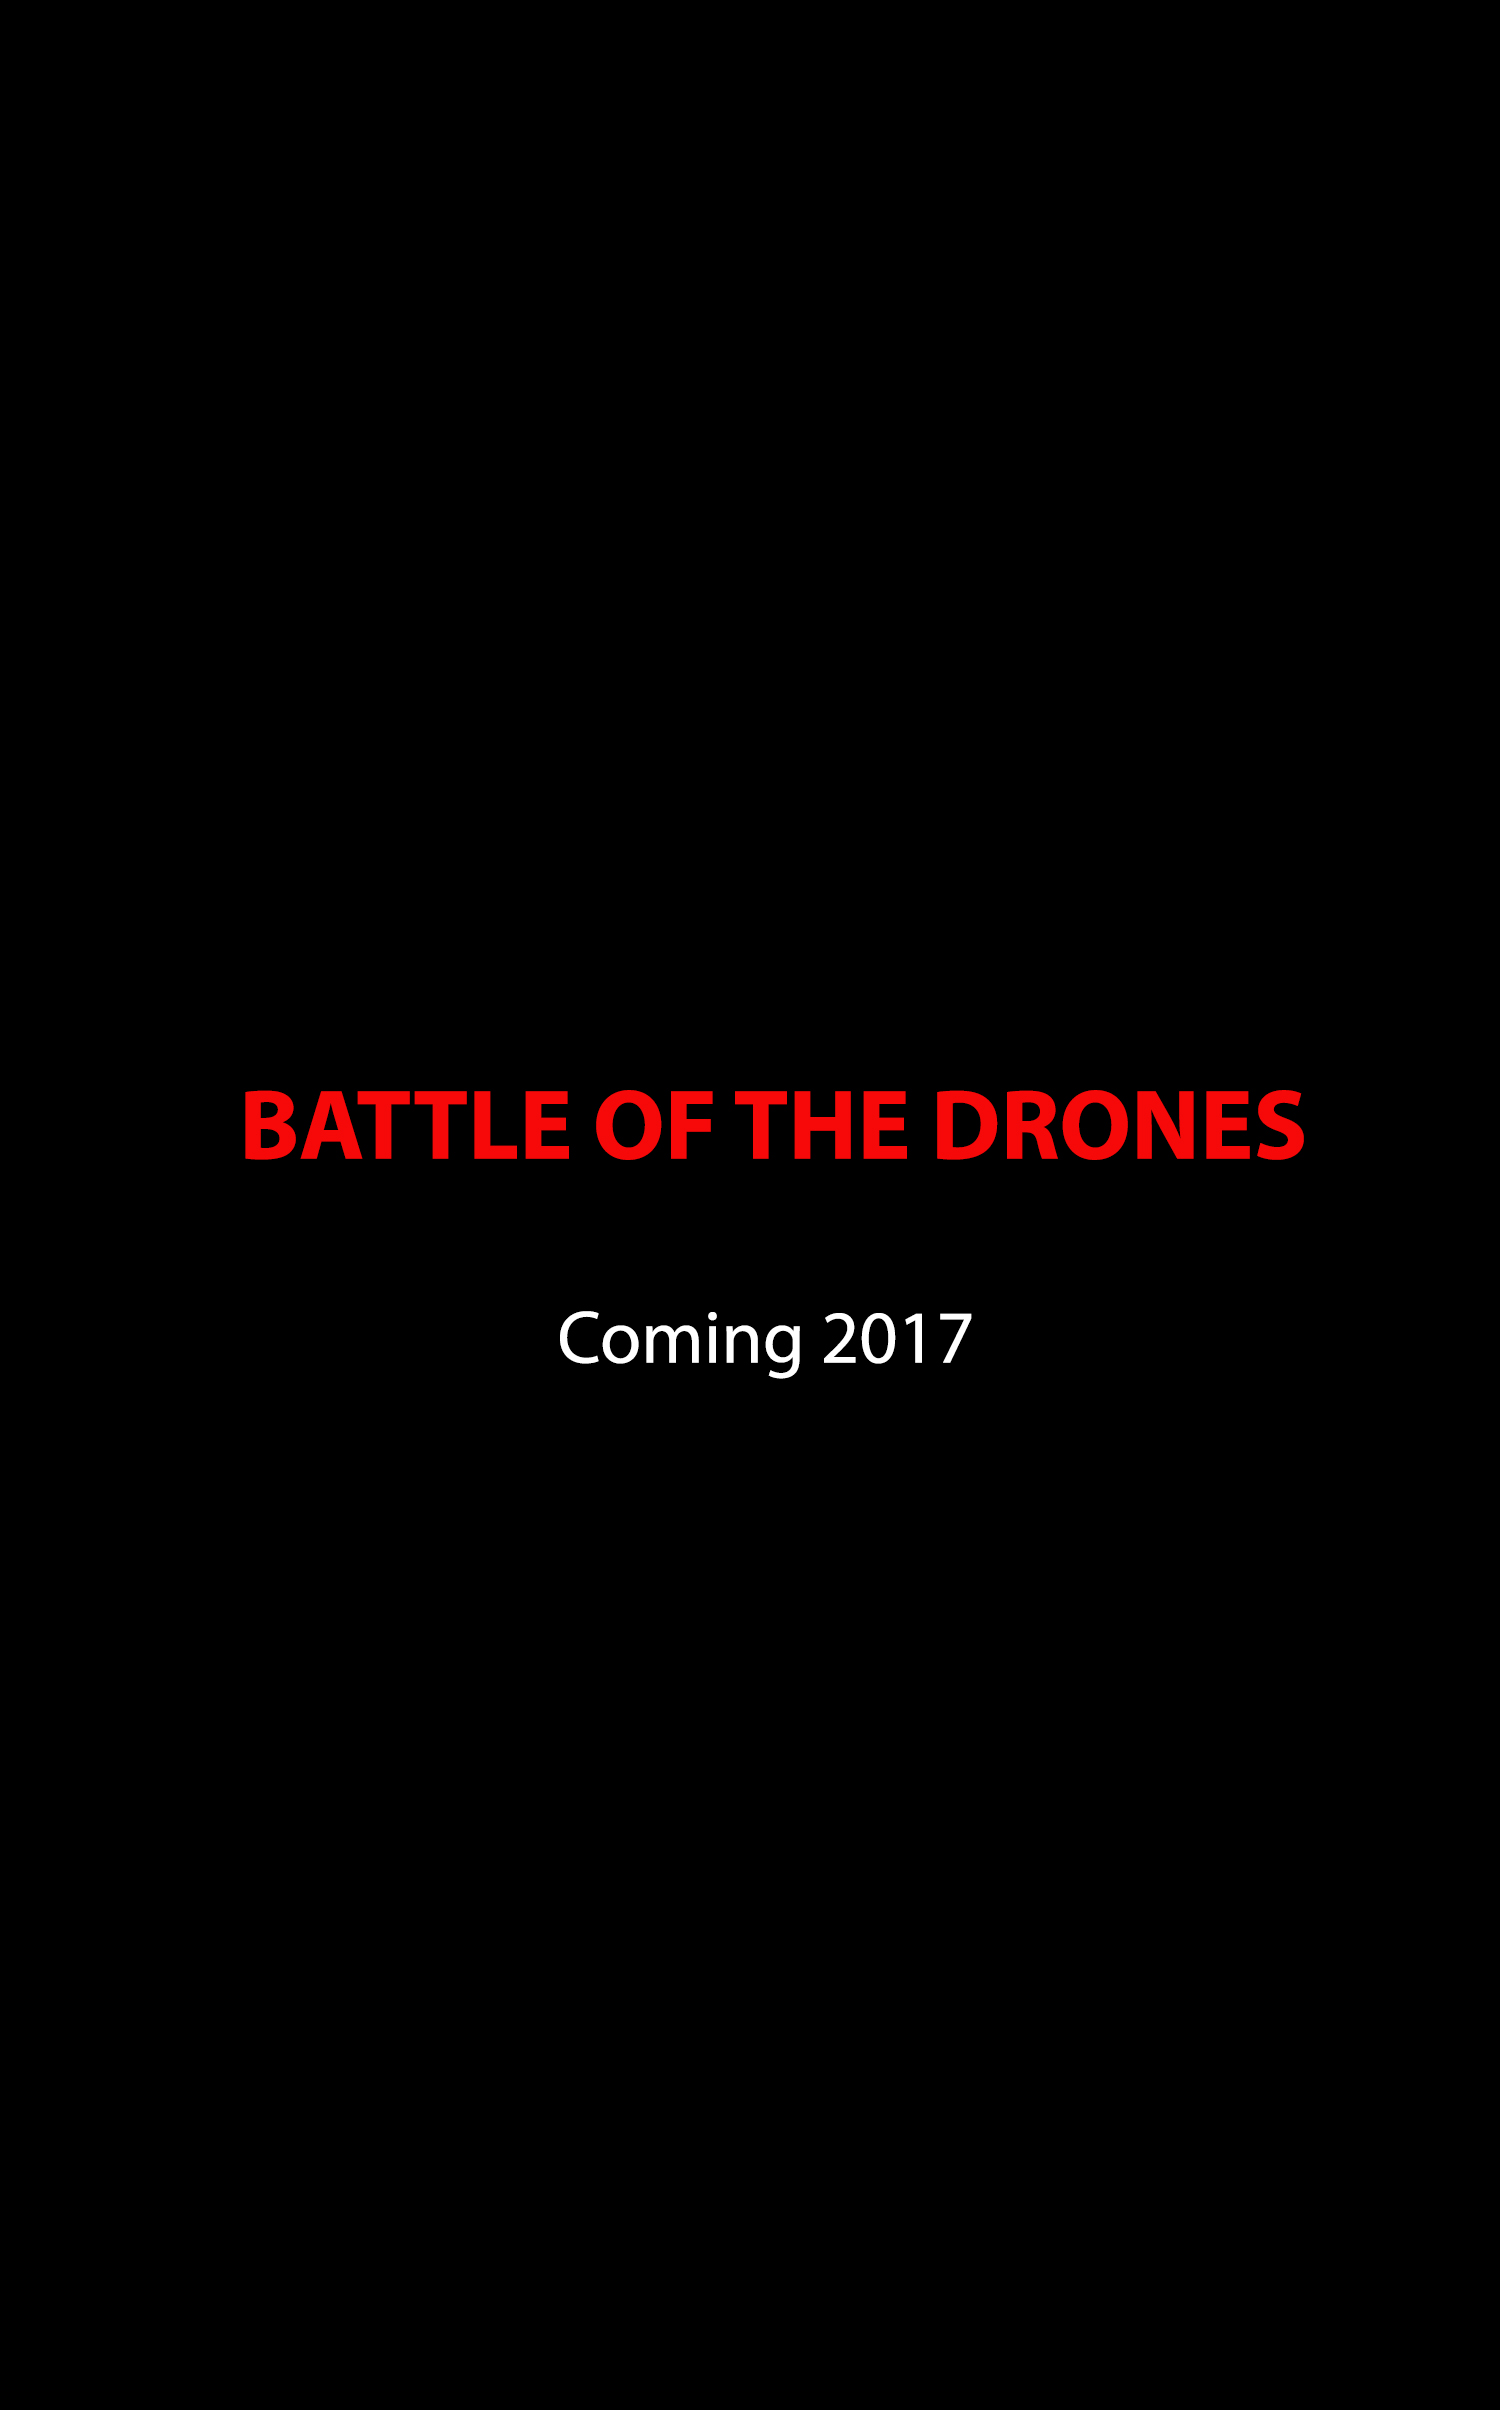 Nonton film Battle Drone layarkaca21 indoxx1 ganool online streaming terbaru